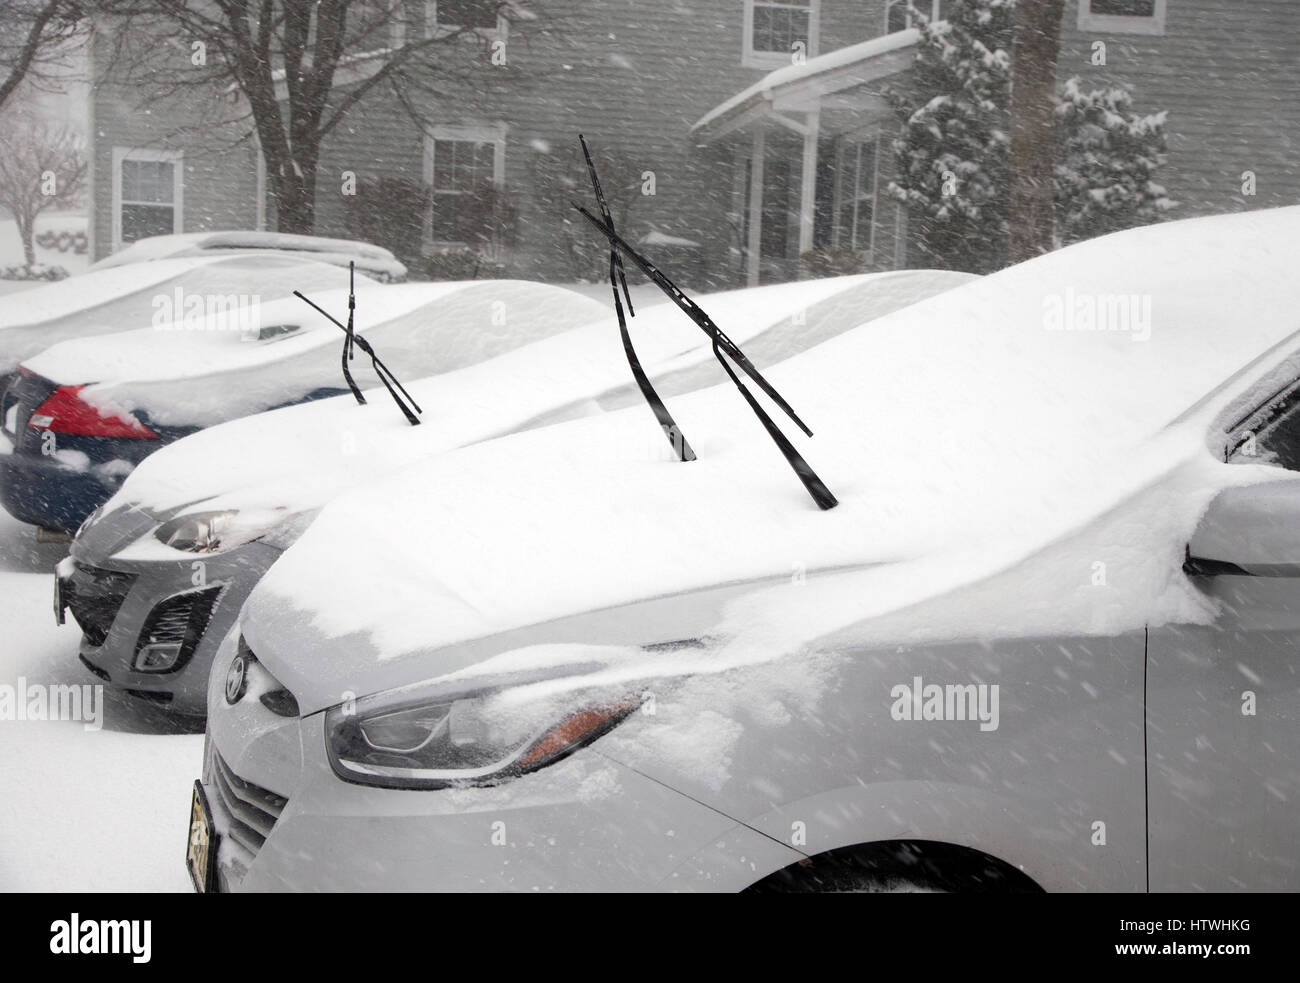 Les essuie-glace sur une voiture pendant une tempête de neige Banque D'Images